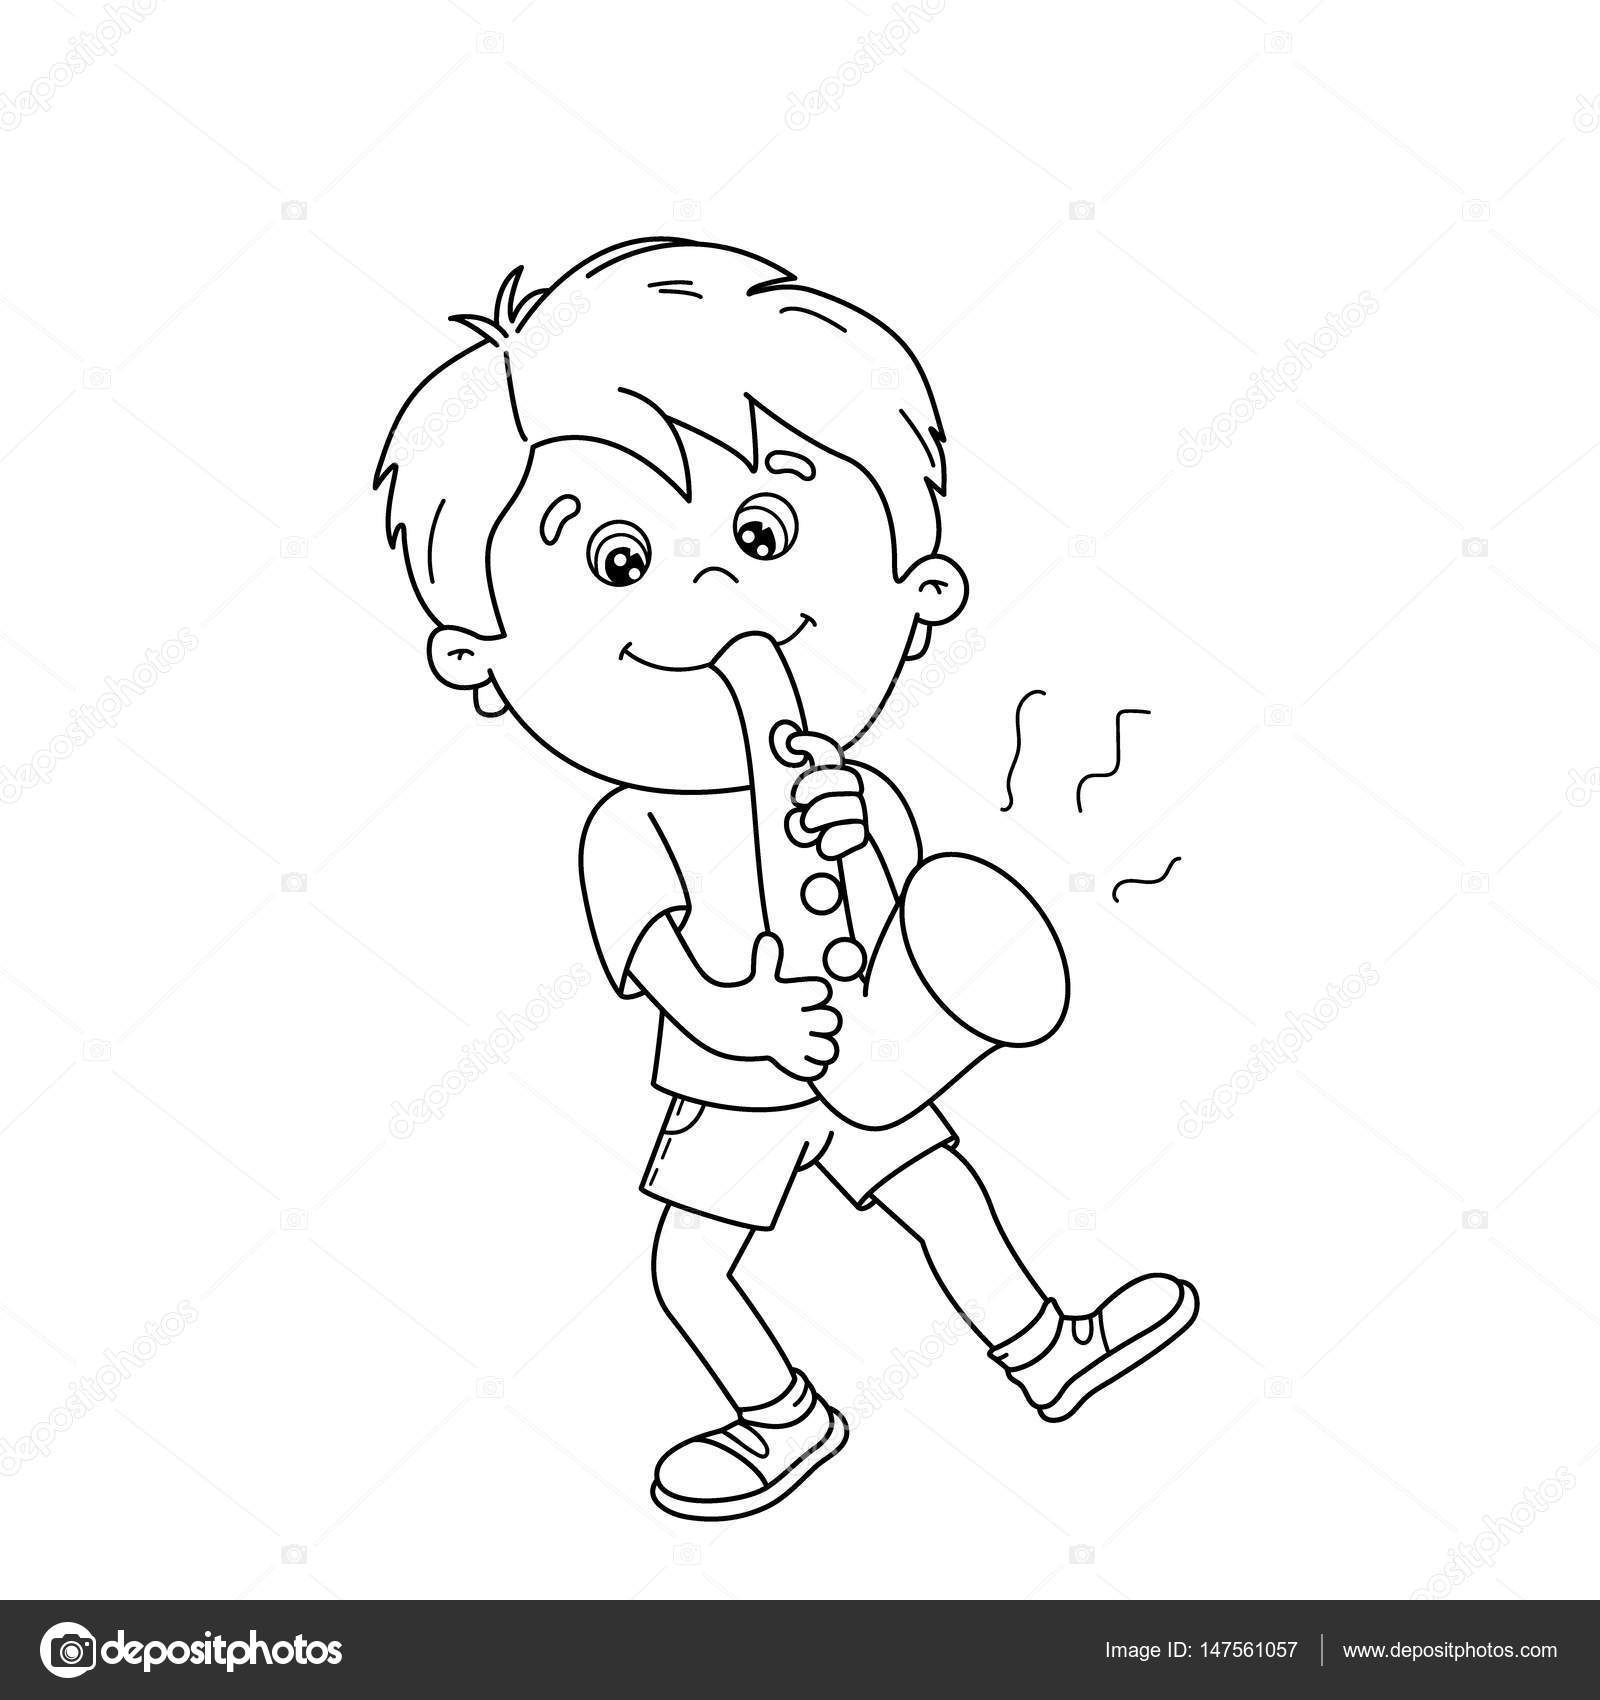 Disegni da colorare pagina muta del fumetto ragazzo suonare il sassofono Strumenti musicali Libro da colorare per bambini — Vettoriali di Oleon17